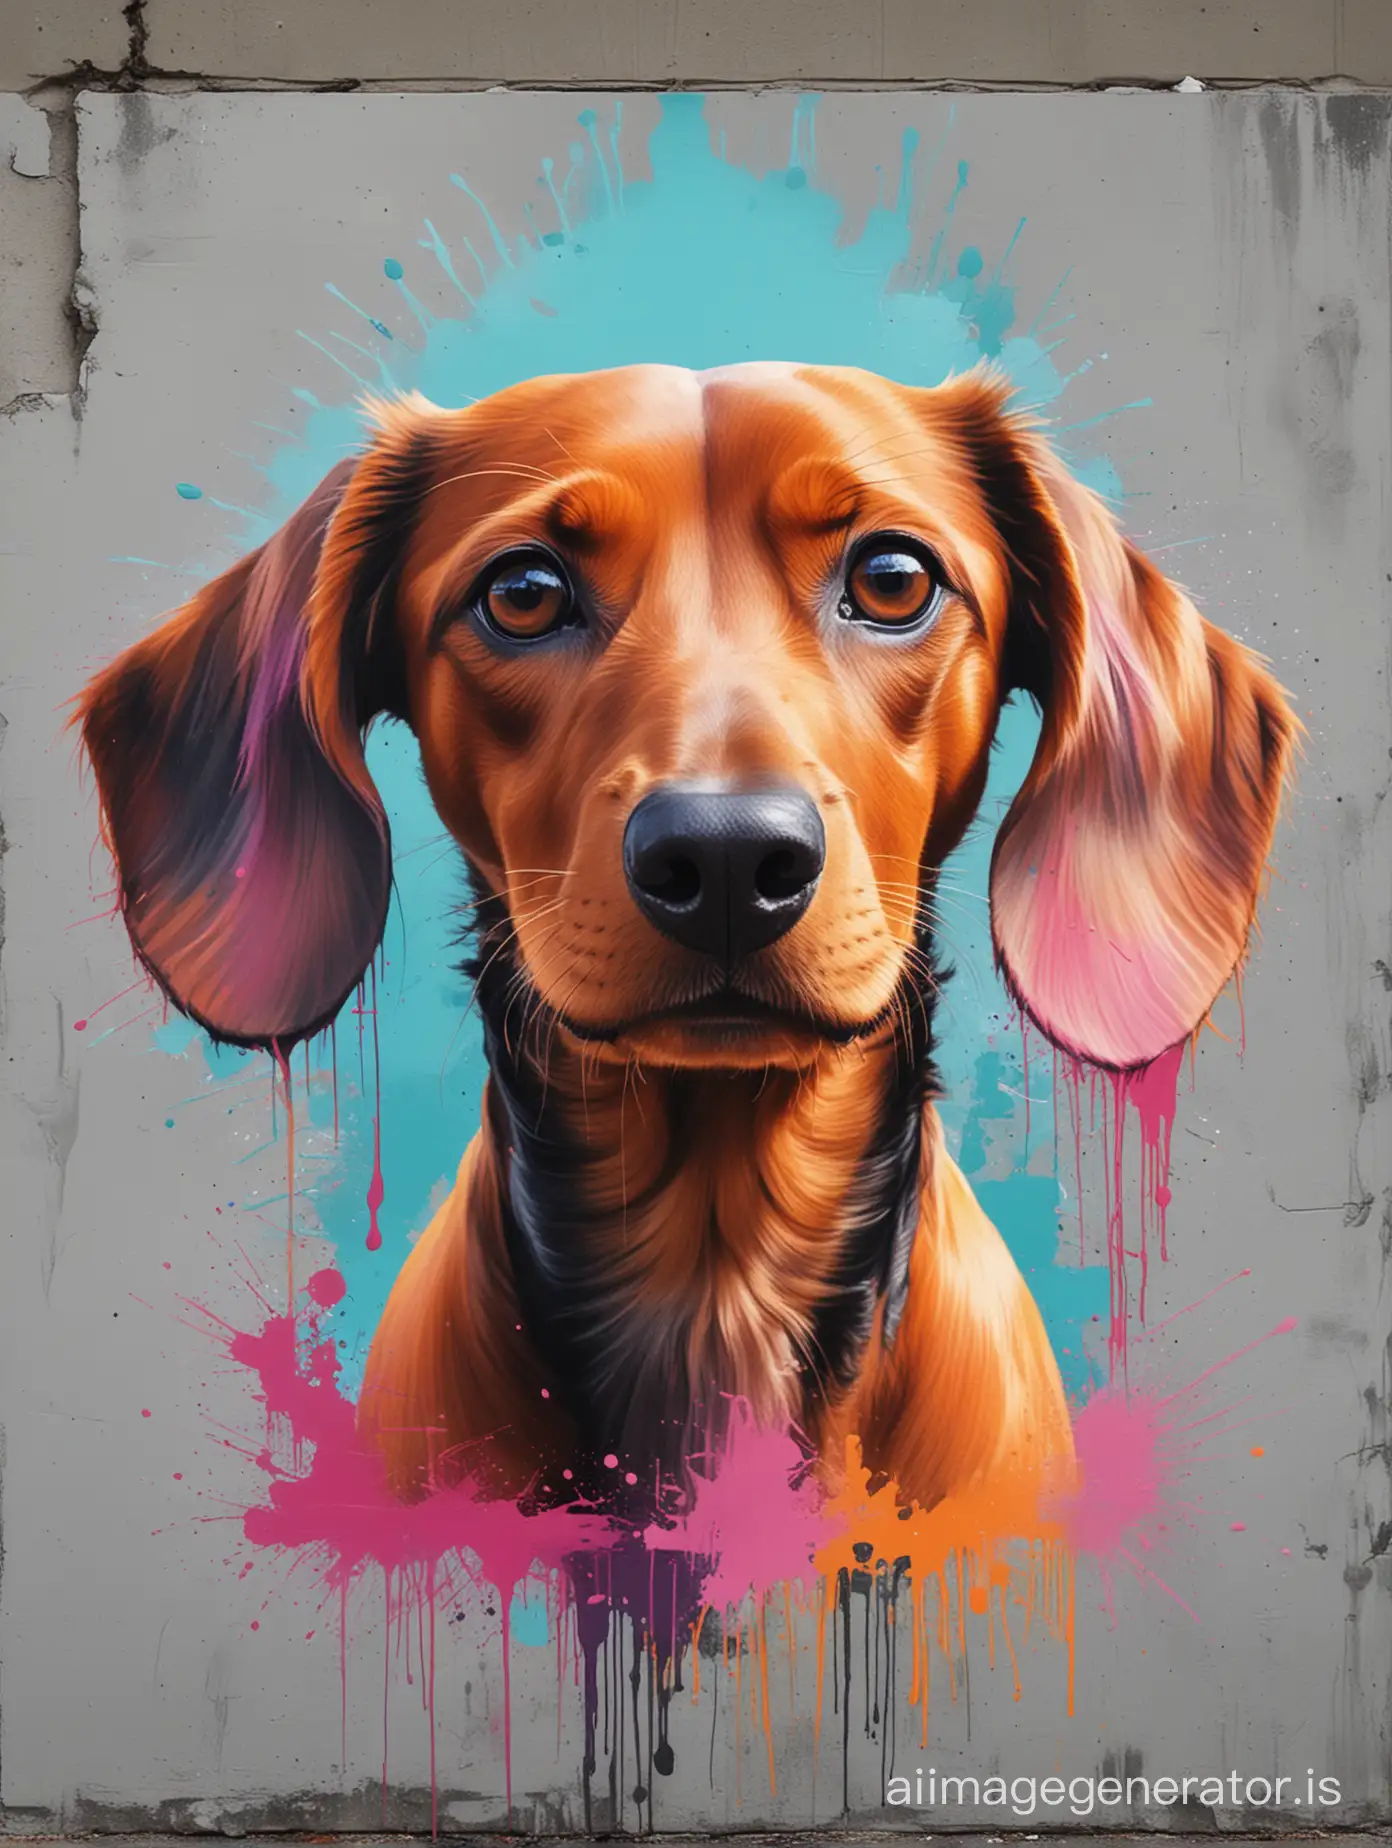 Una cautivadora obra de arte abstracta y conceptual de un vibrante perro salchicha, con colores que se mezclan de adelante hacia atrás. La cara del perro es una representación dinámica y en capas de colores, comenzando con una mezcla de naranja intenso y cian en el frente. Los colores pasan a un gris frío y finalmente se calientan hasta convertirse en una mezcla de naranja y rosa en la parte posterior. La pintura incorpora pinceladas inspiradas en graffiti, creando una atmósfera enérgica y animada. El ambiente general de la pintura es arte conceptual, con un toque de arte callejero urbano.